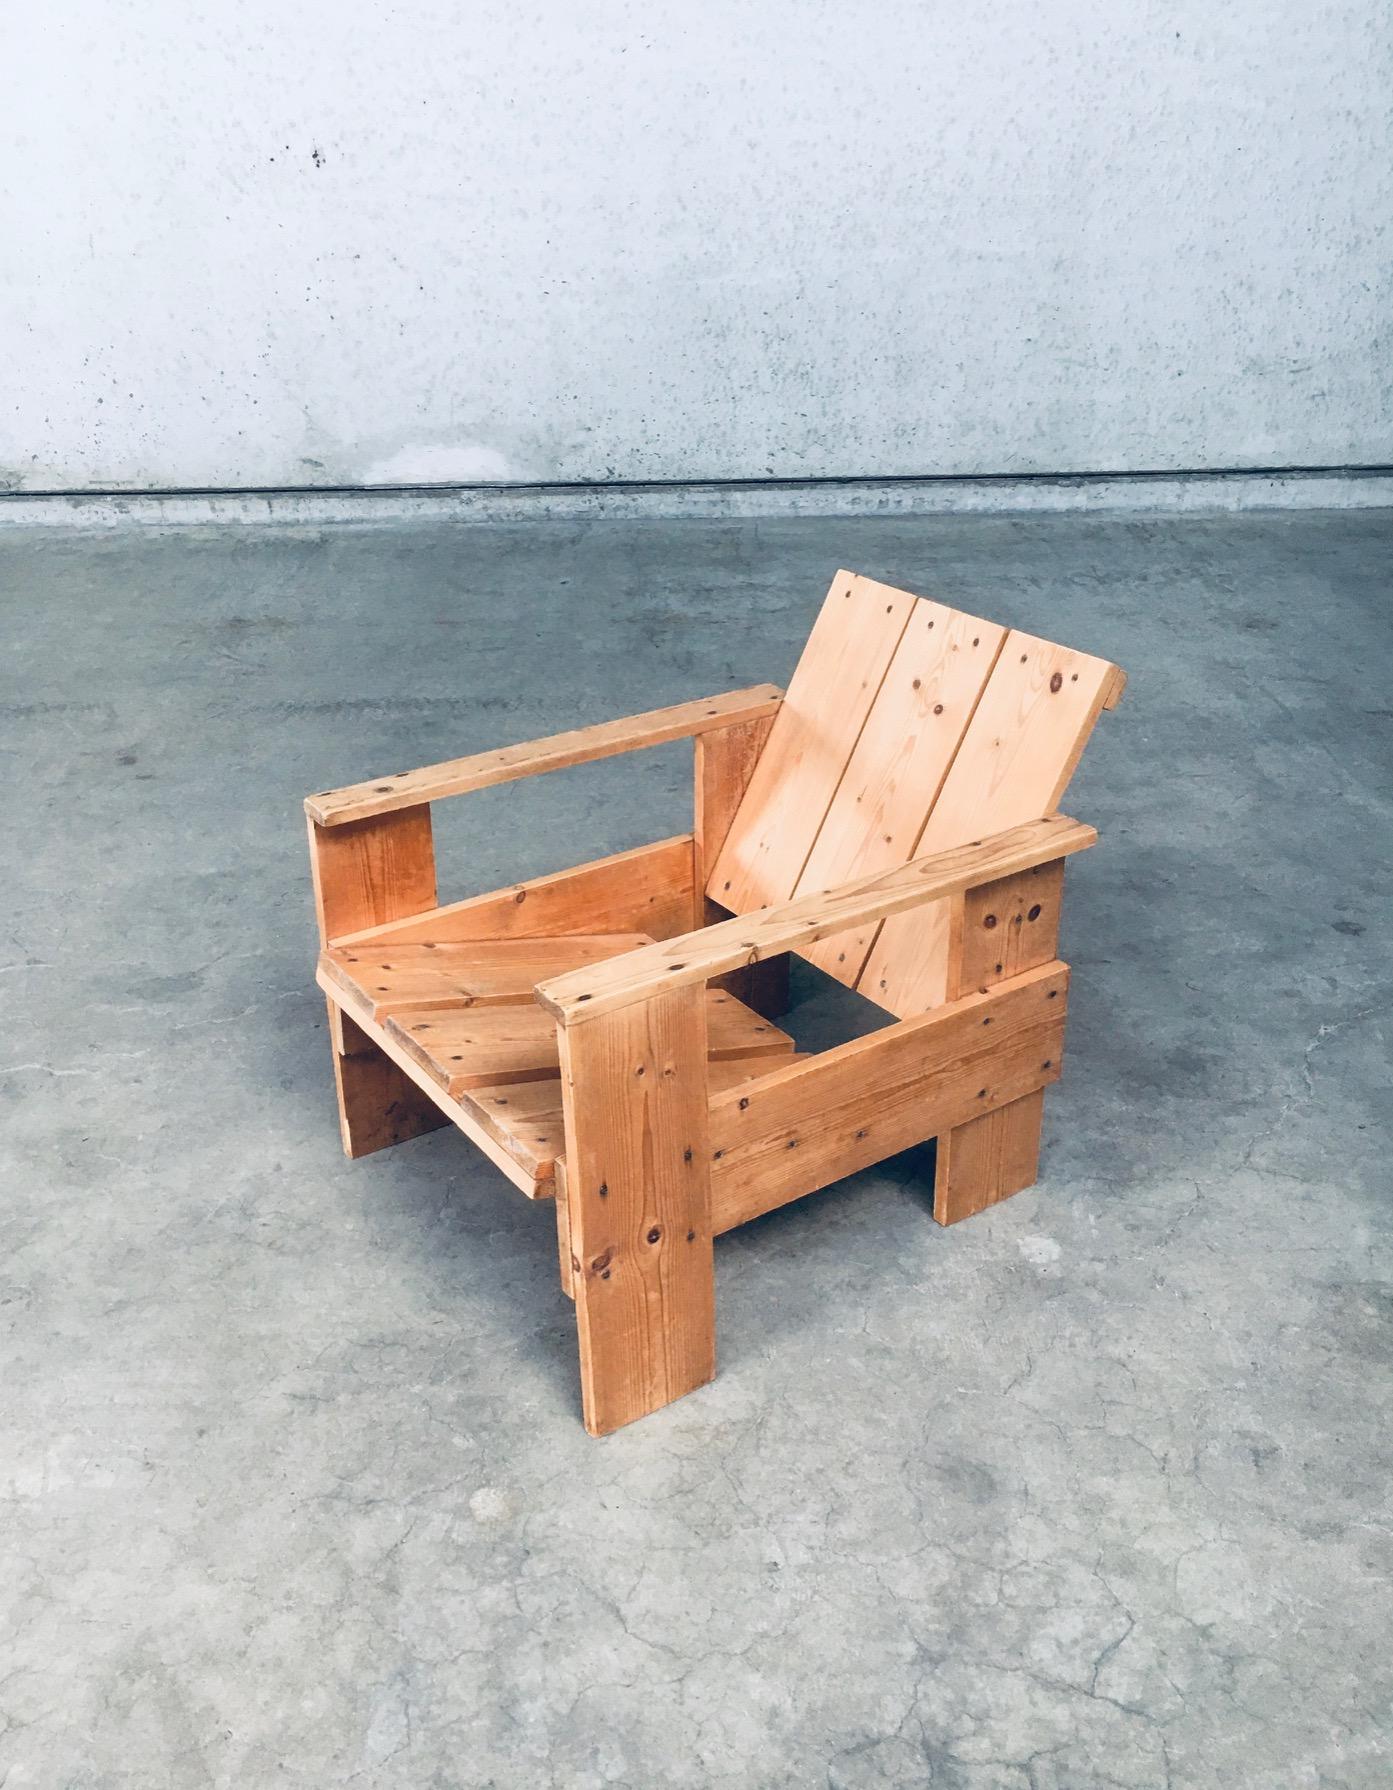 De Stijl Movement Dutch Design Pine CRATE Chair by Gerrit Rietveld For Sale 2